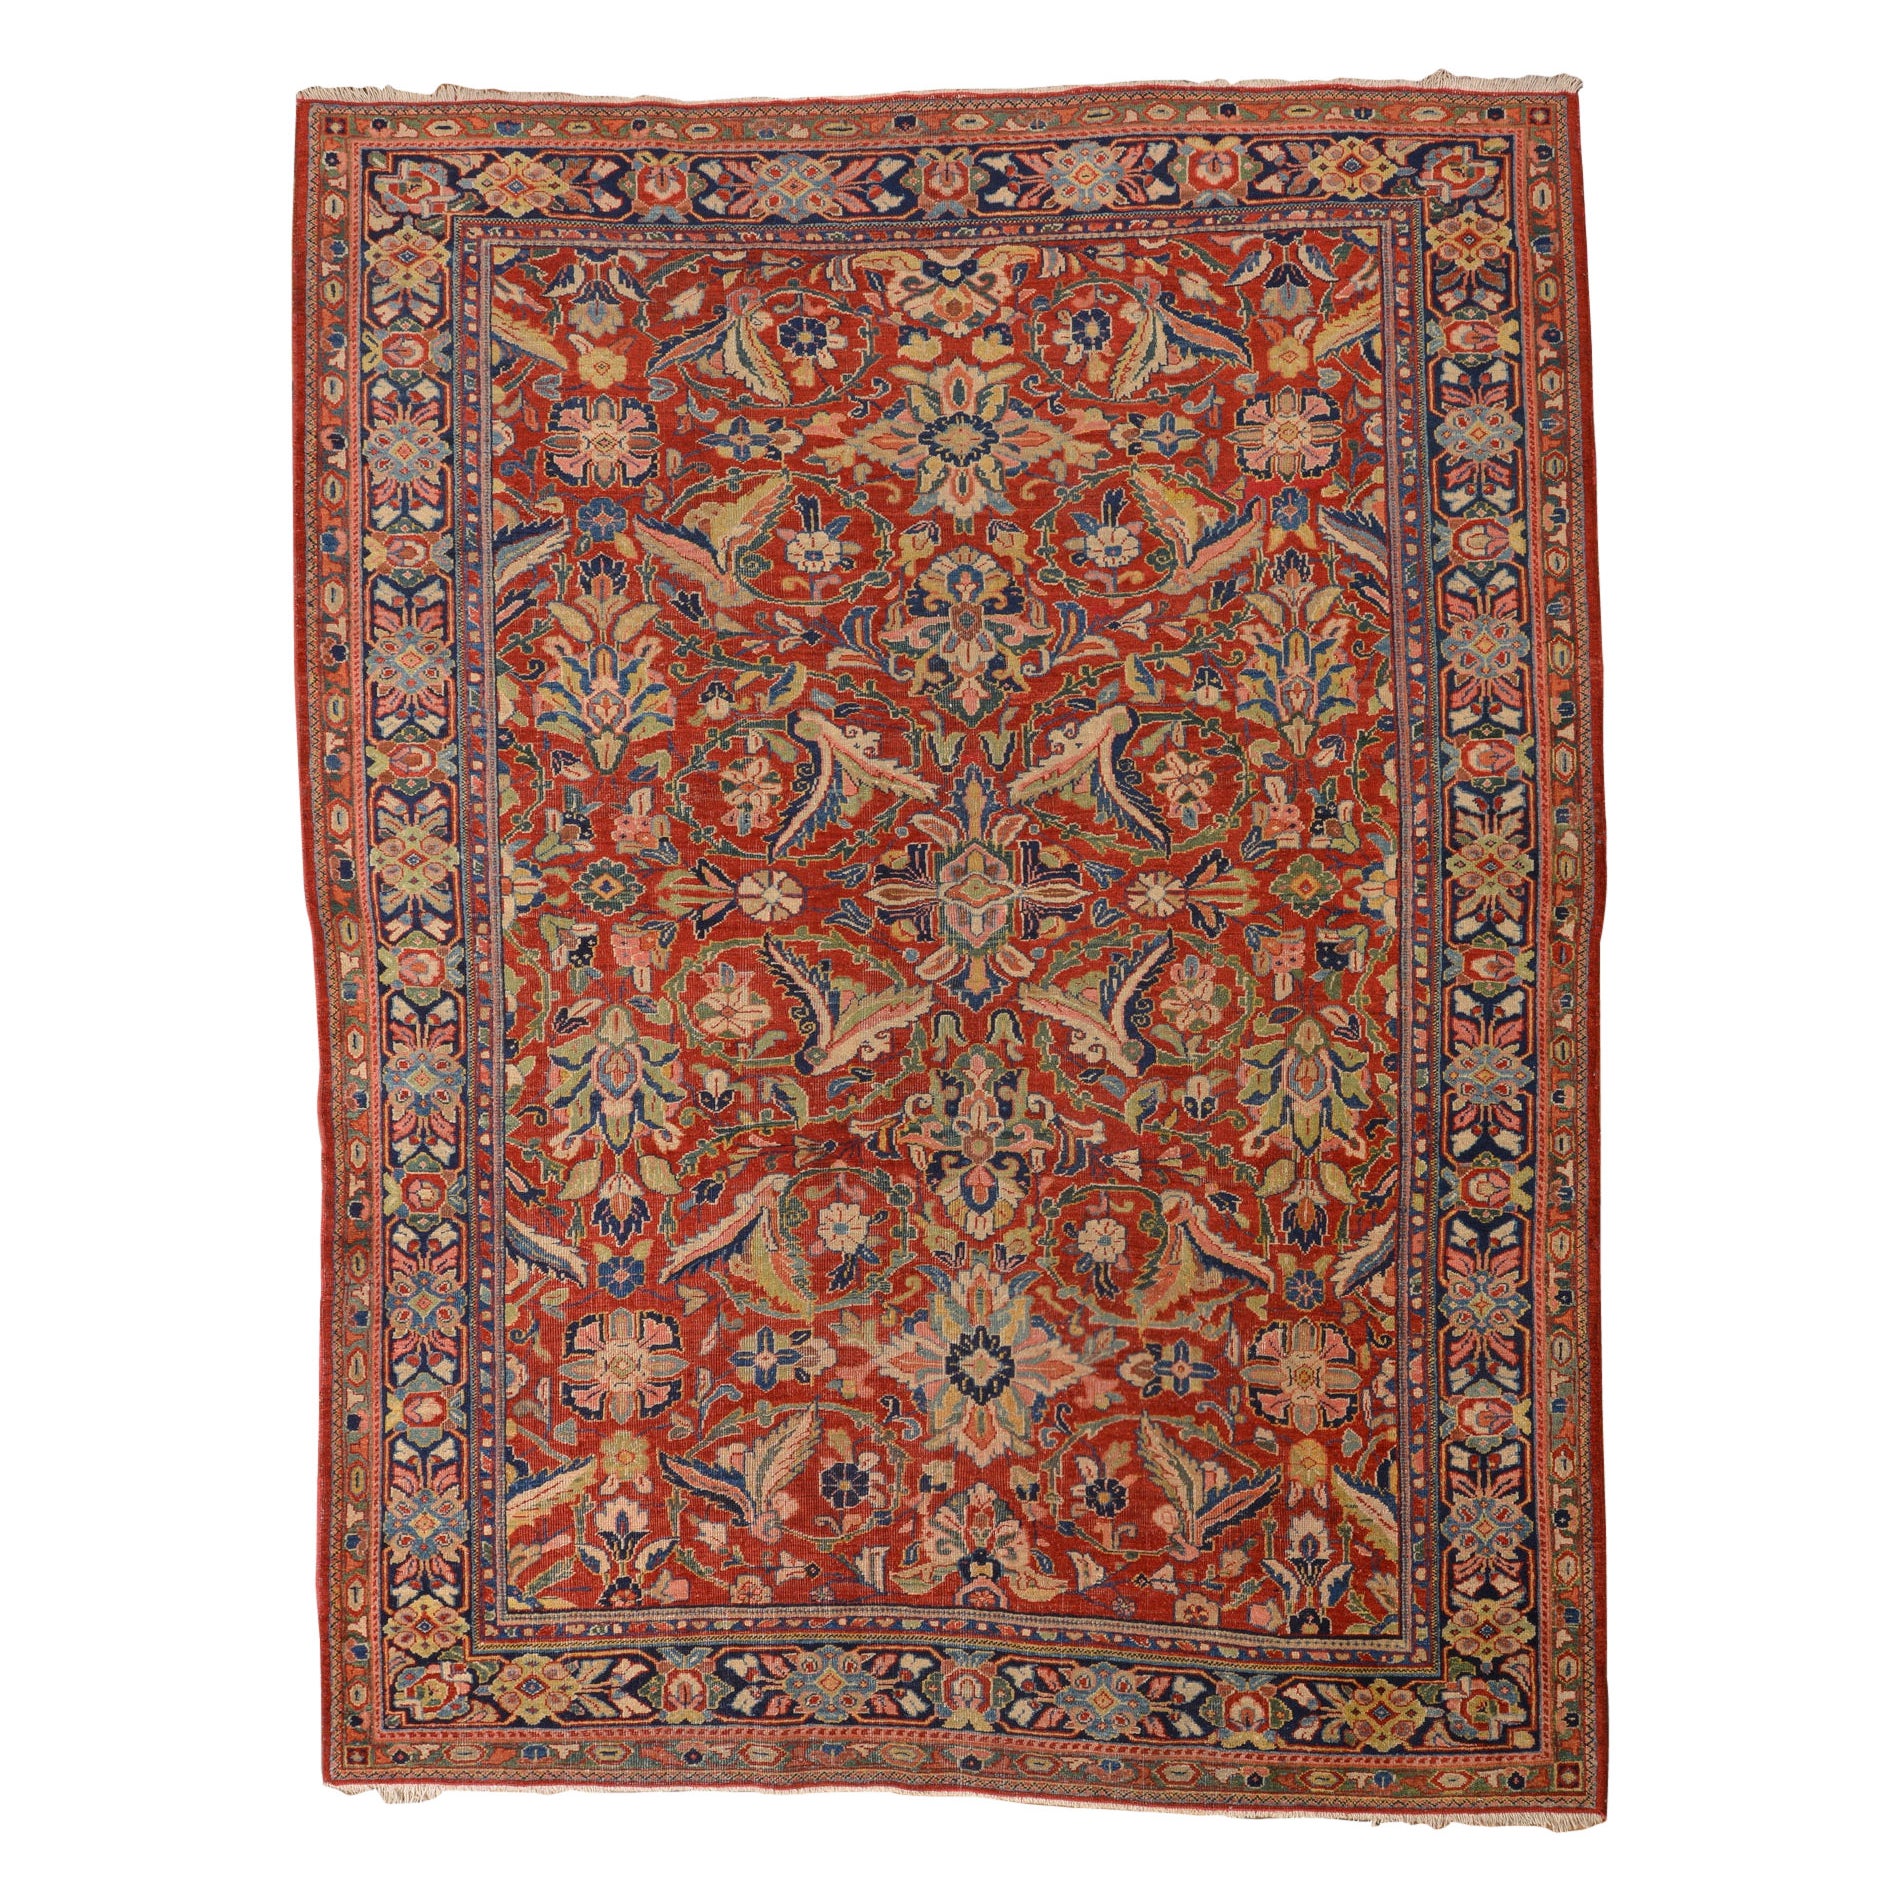 Antique Garebagh Rug or Carpet For Sale